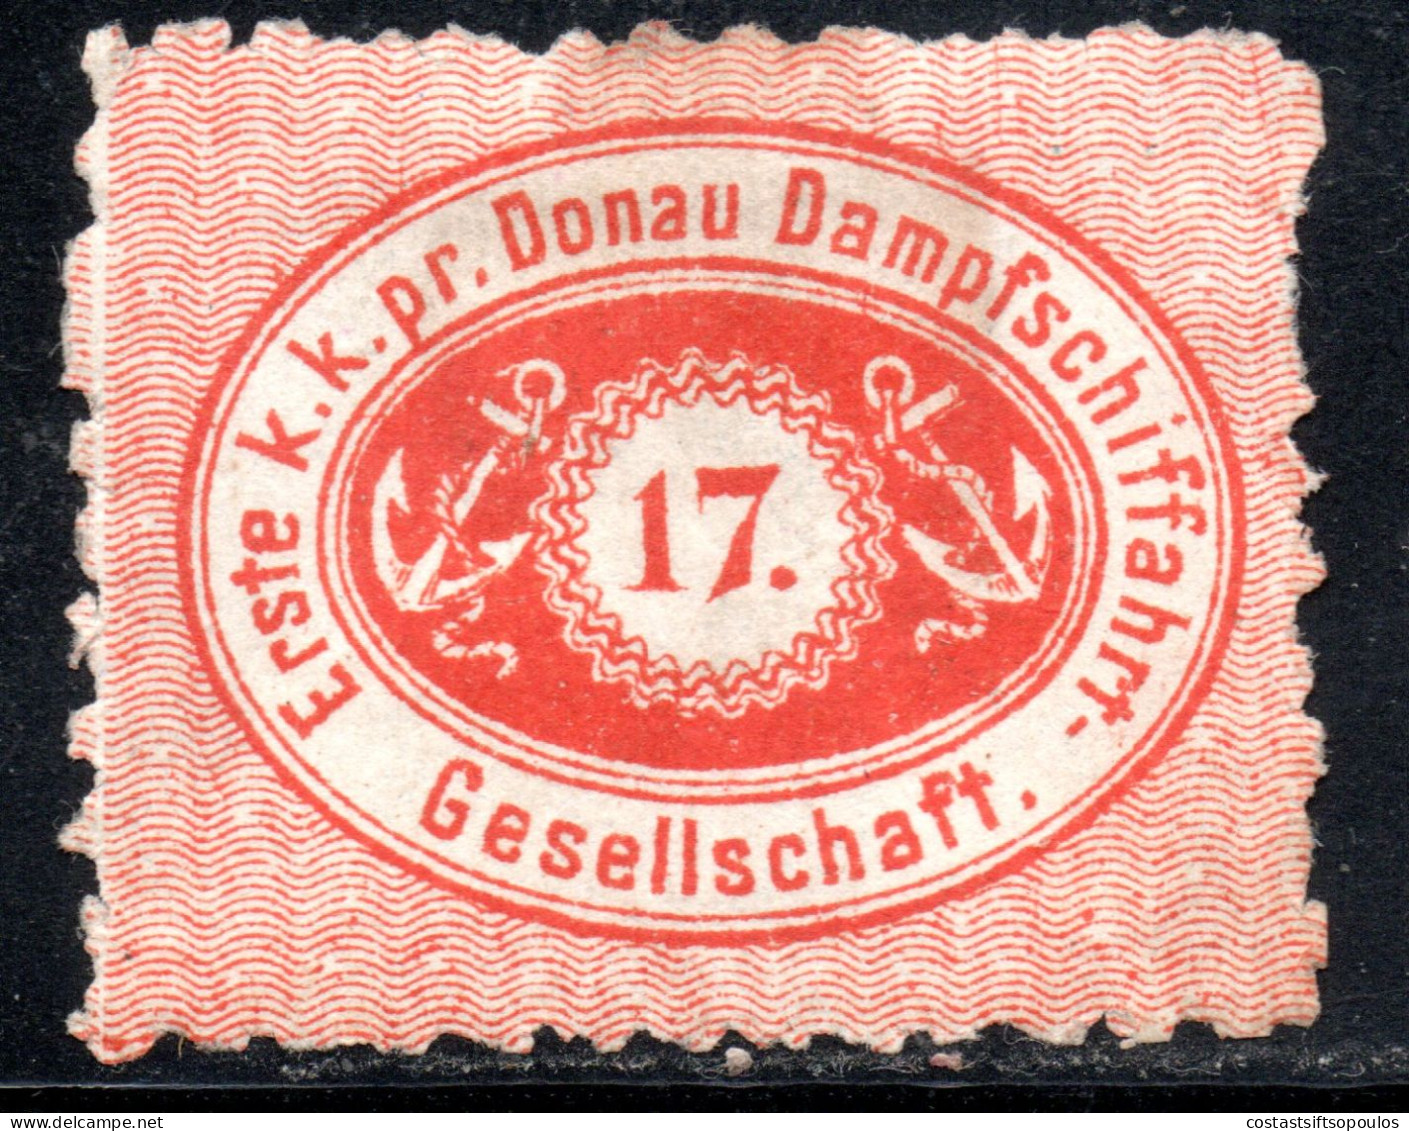 2460. AUSTRIA 1866 DDSG 17 KR. #1 SIGNED - Compagnia Di Navigazione A Vapore Del Danubio (DDSG)